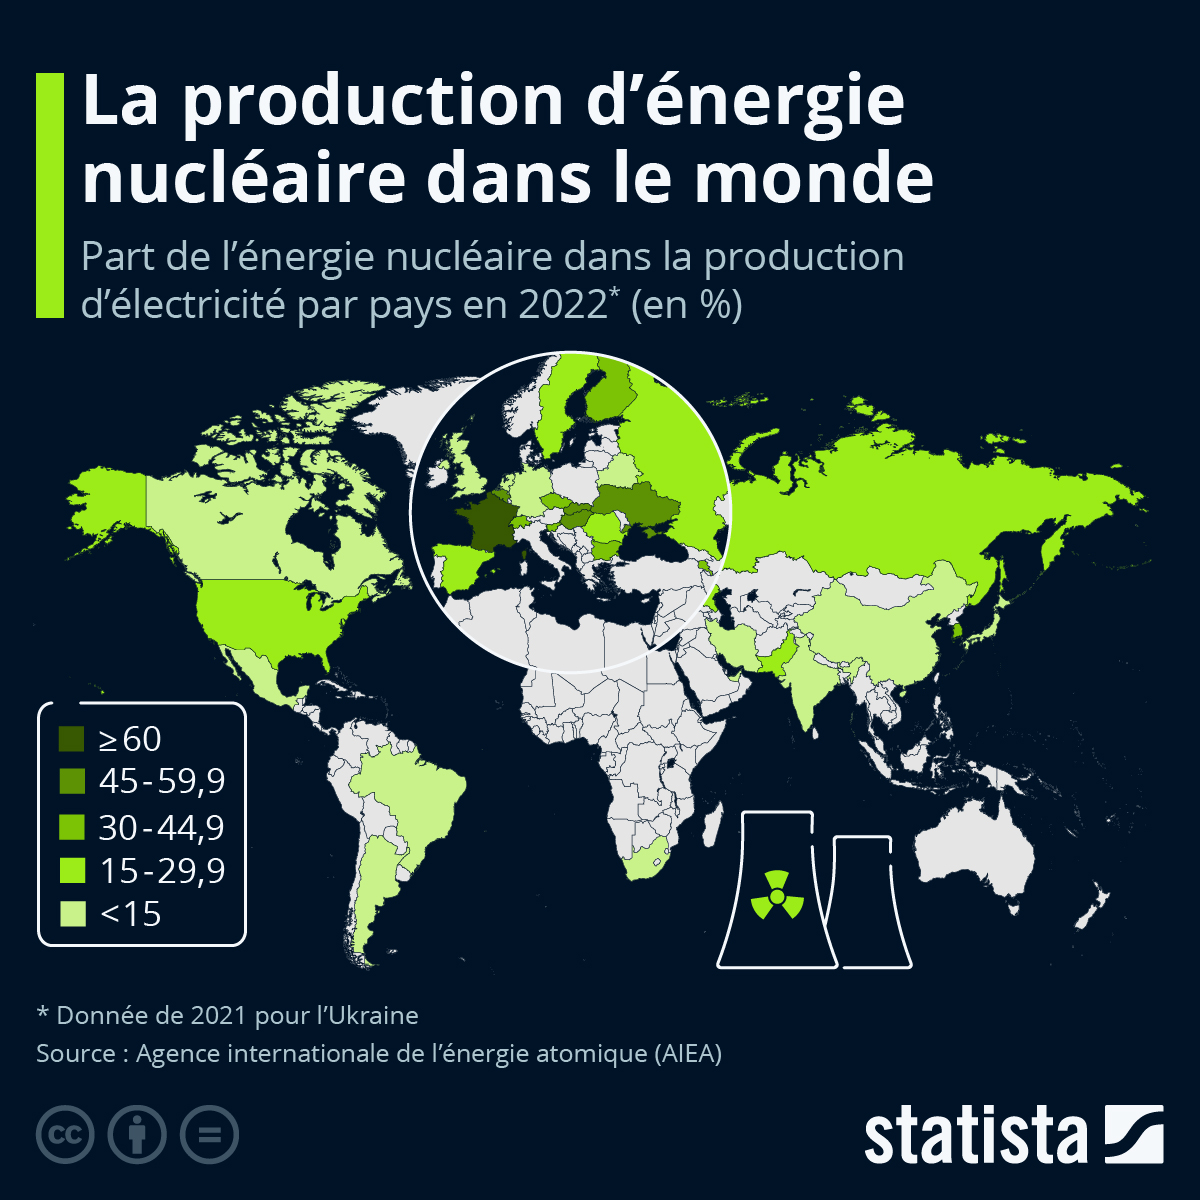 les pays producteurs d'énergie nucléaire dans le monde